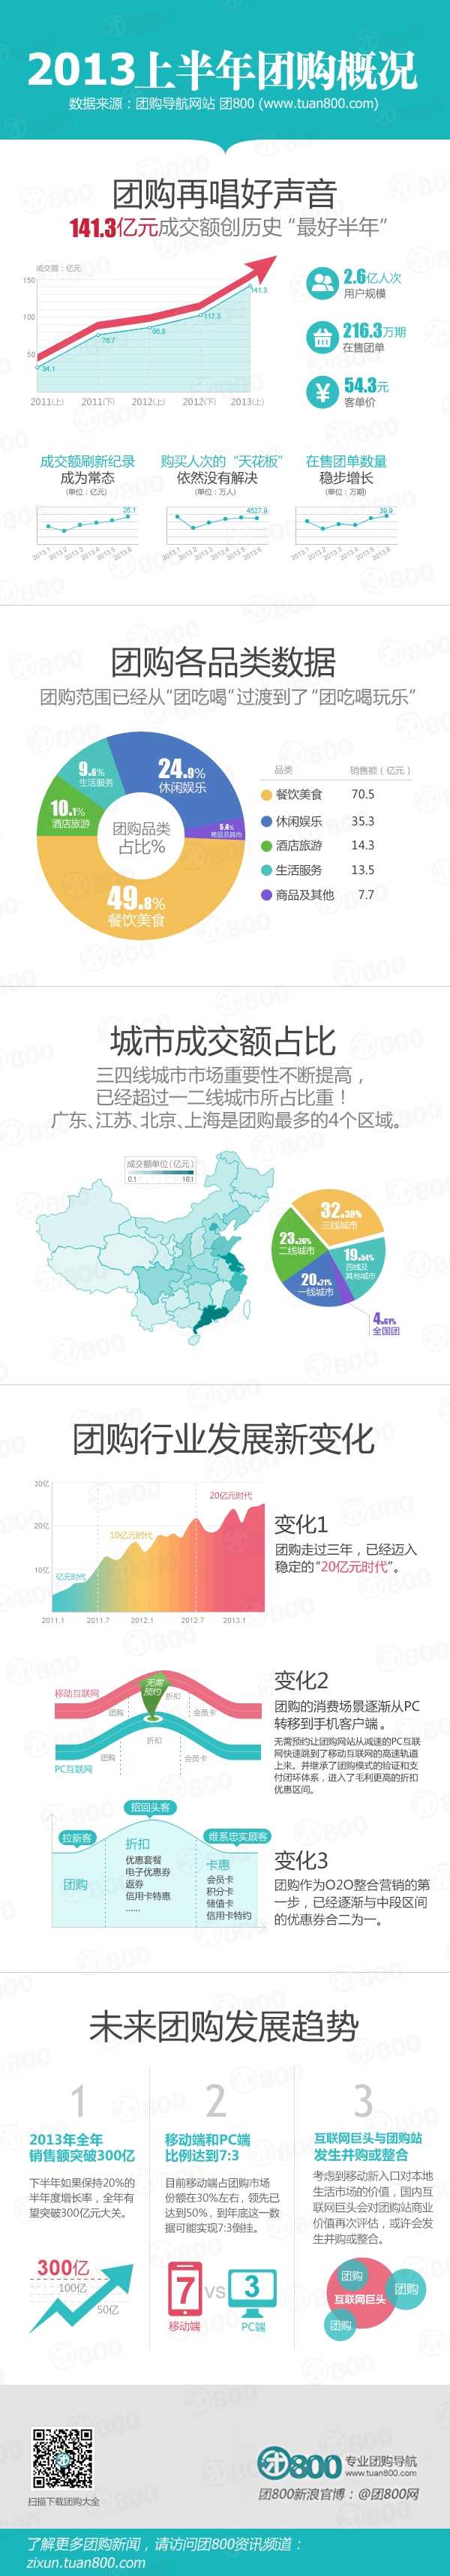 2013年上半年中国团购市场发展概况